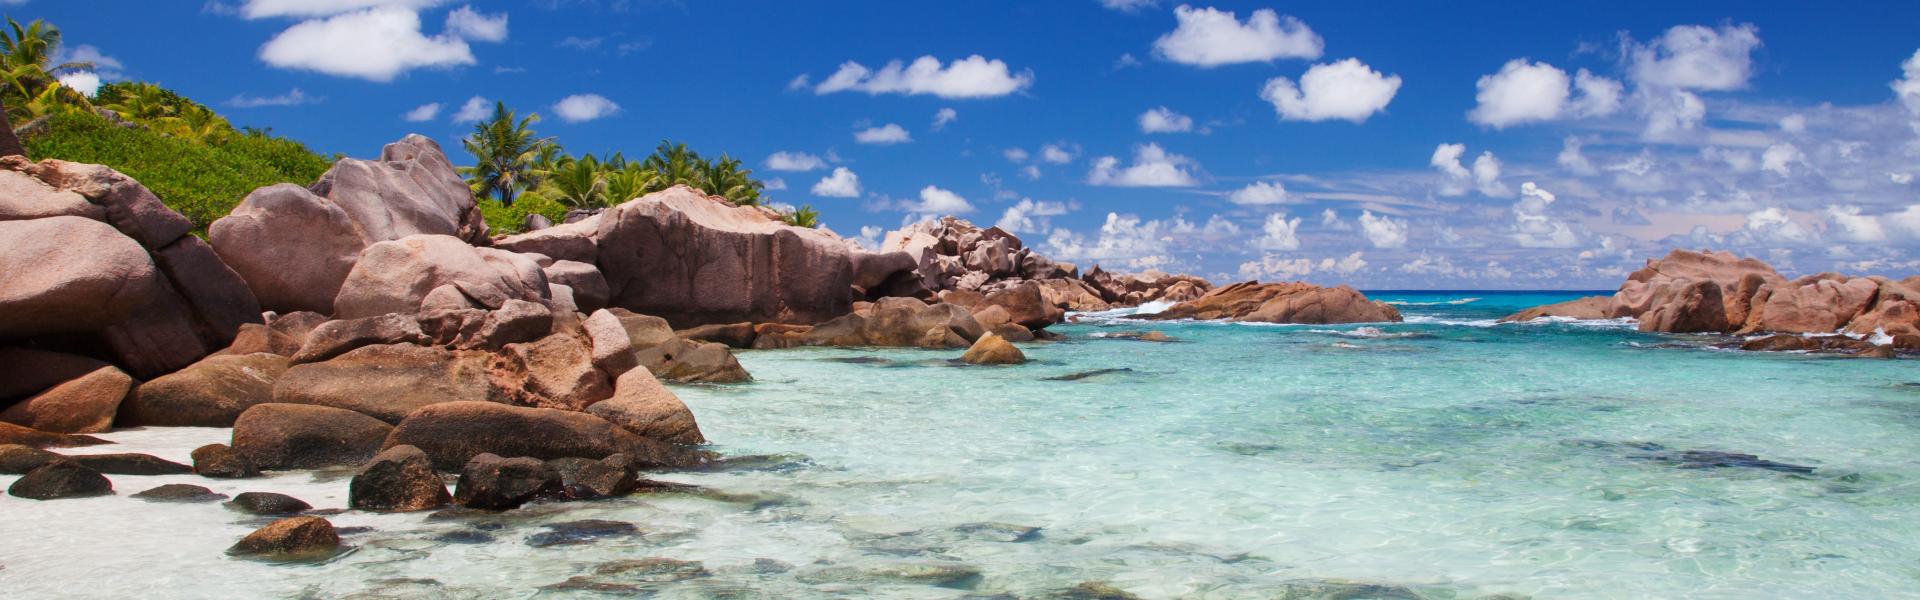 Organiza tu viaje y encuentra alojamiento en las Seychelles - HomeToGo